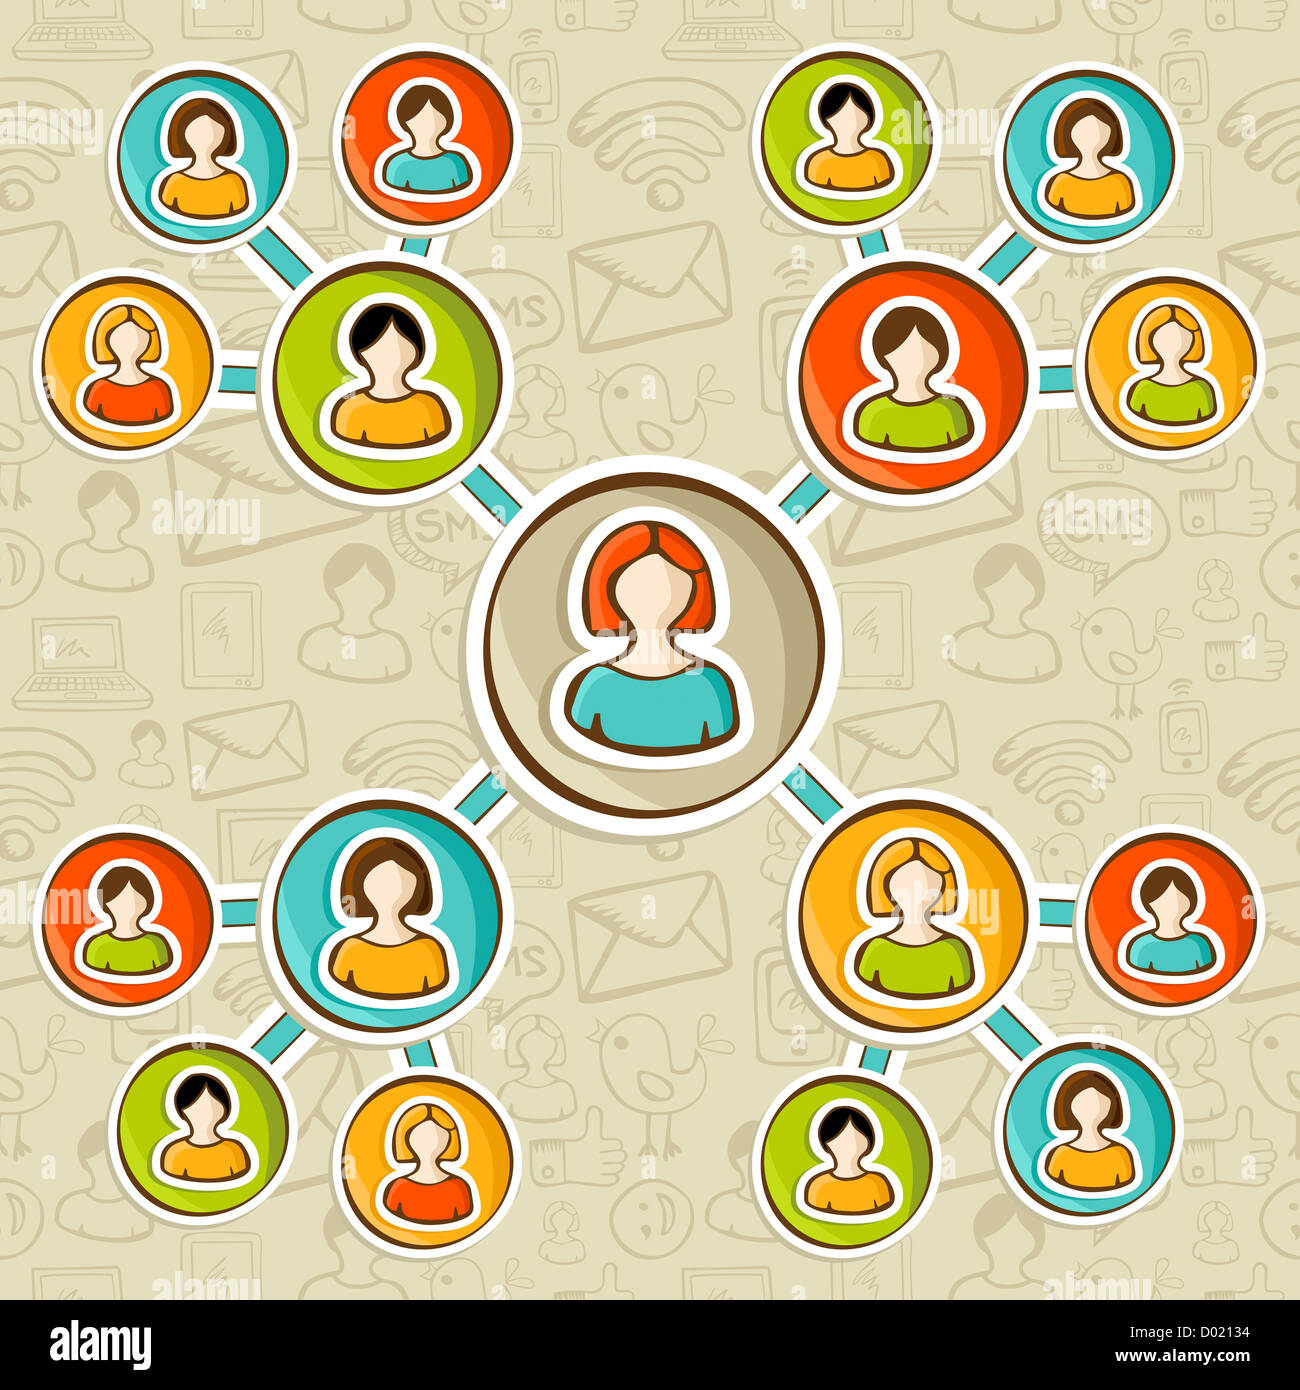 Social media network marketing online diagramma di rapporto su schizzo icone pattern. Persone utente collegato ad ogni altro. Illustrazione Vettoriale stratificata per una facile manipolazione e colorazione personalizzata. Foto Stock